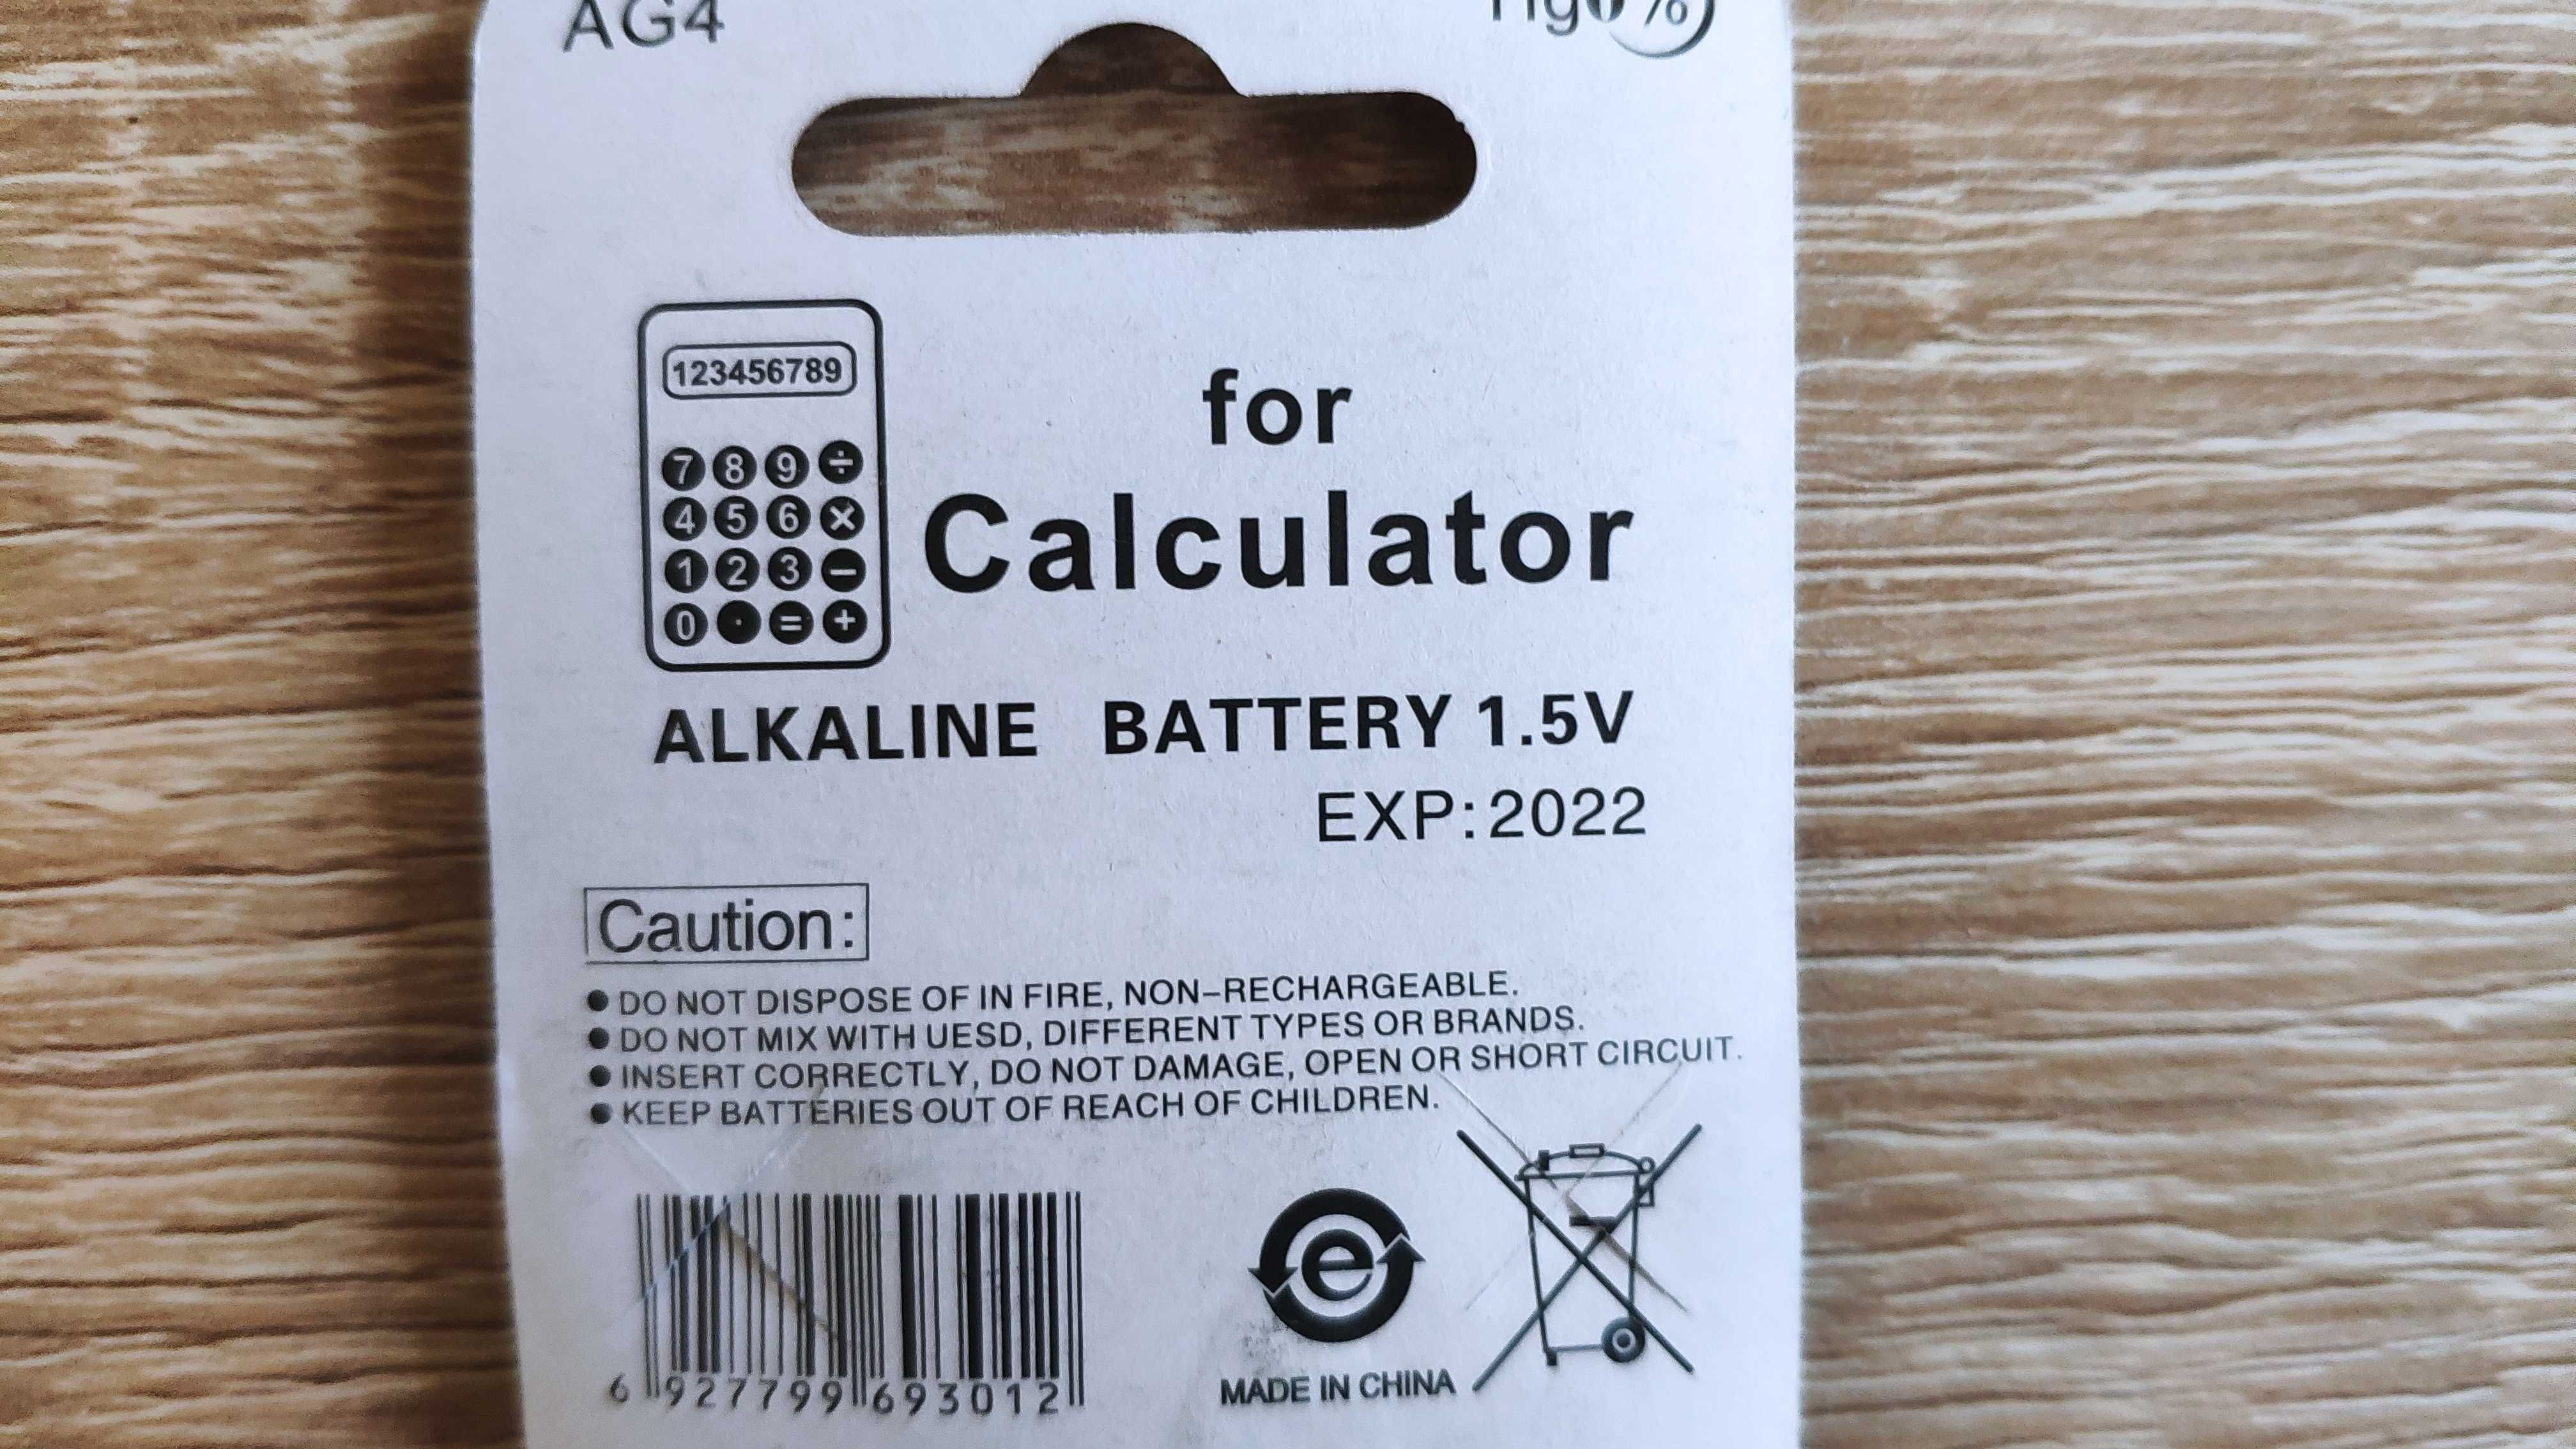 bateria baterie lr626 1,5v hg0% blister 10 sztuk kalkulator inne